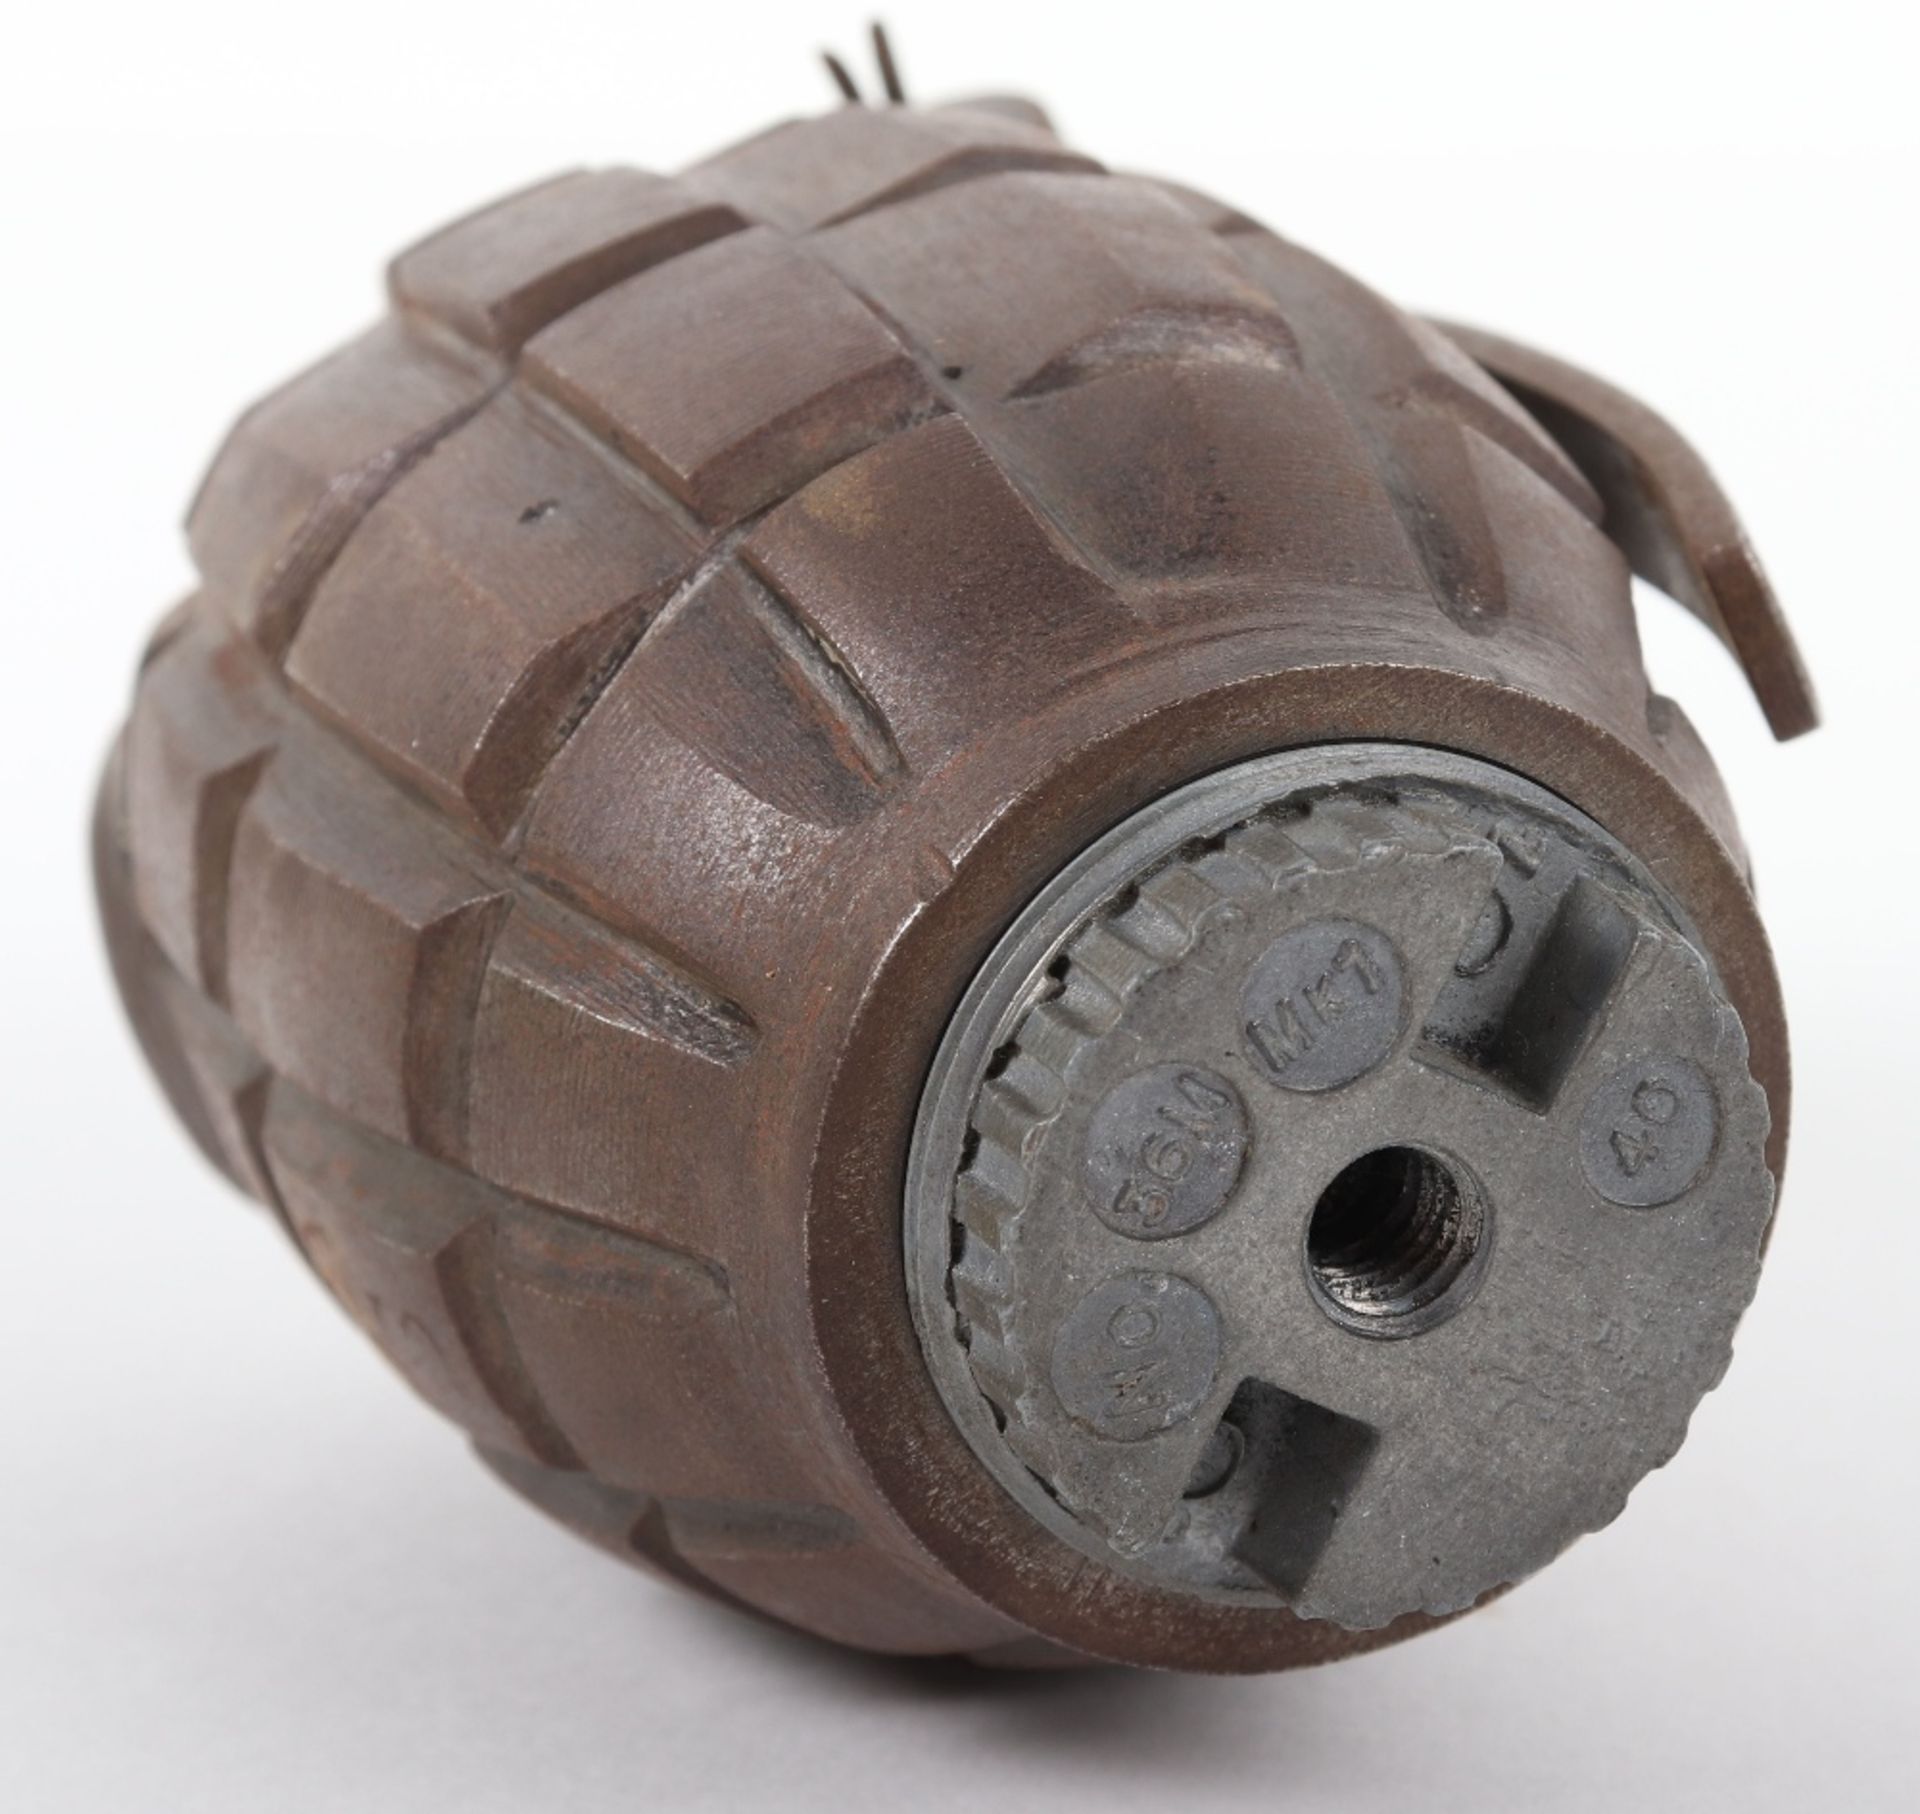 Inert British Mills Grenade - Image 3 of 4